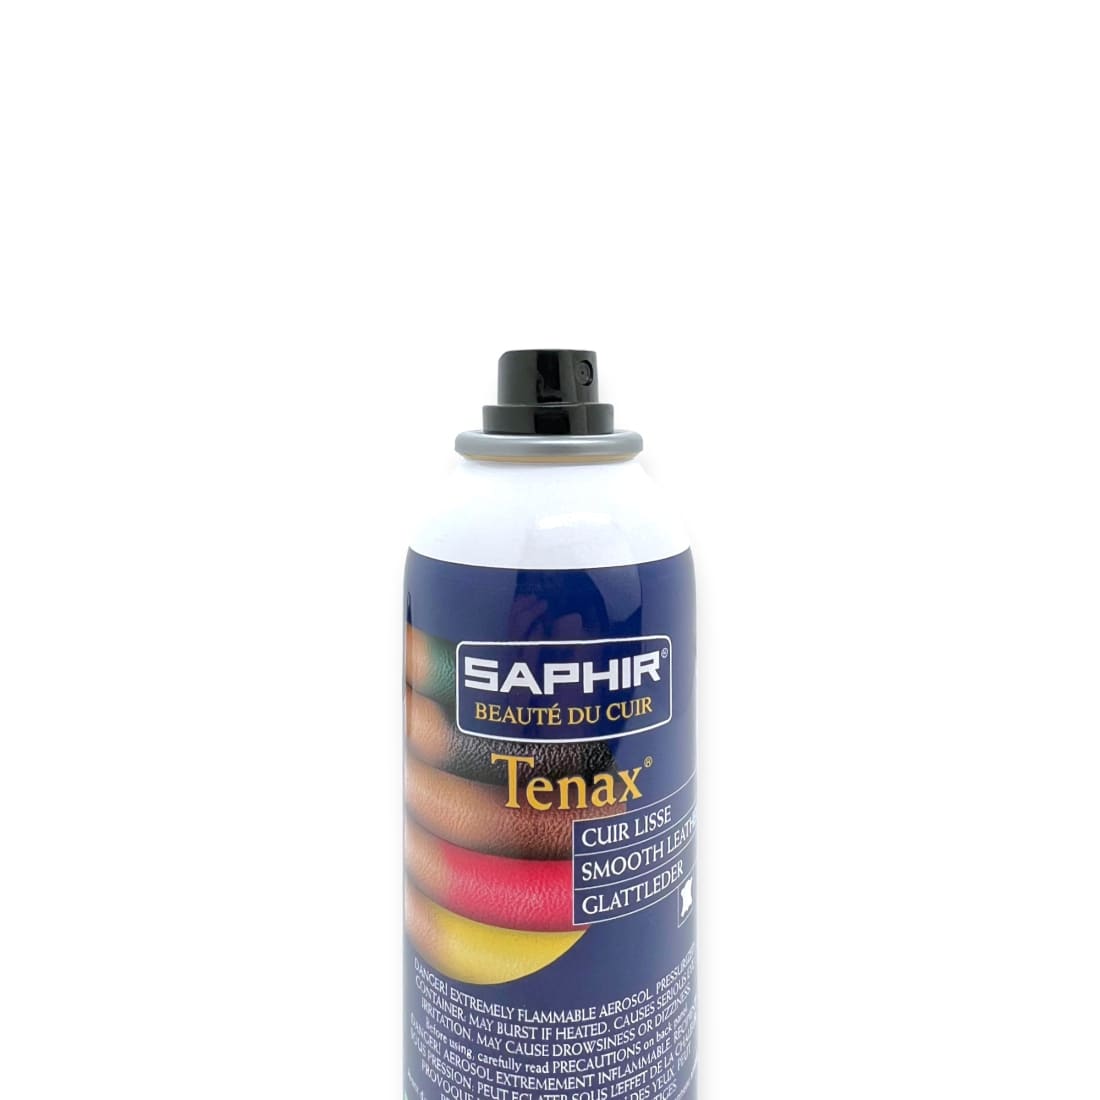 Spray Tenax Teinture Chameau - Saphir - 150 ml - Accessoires